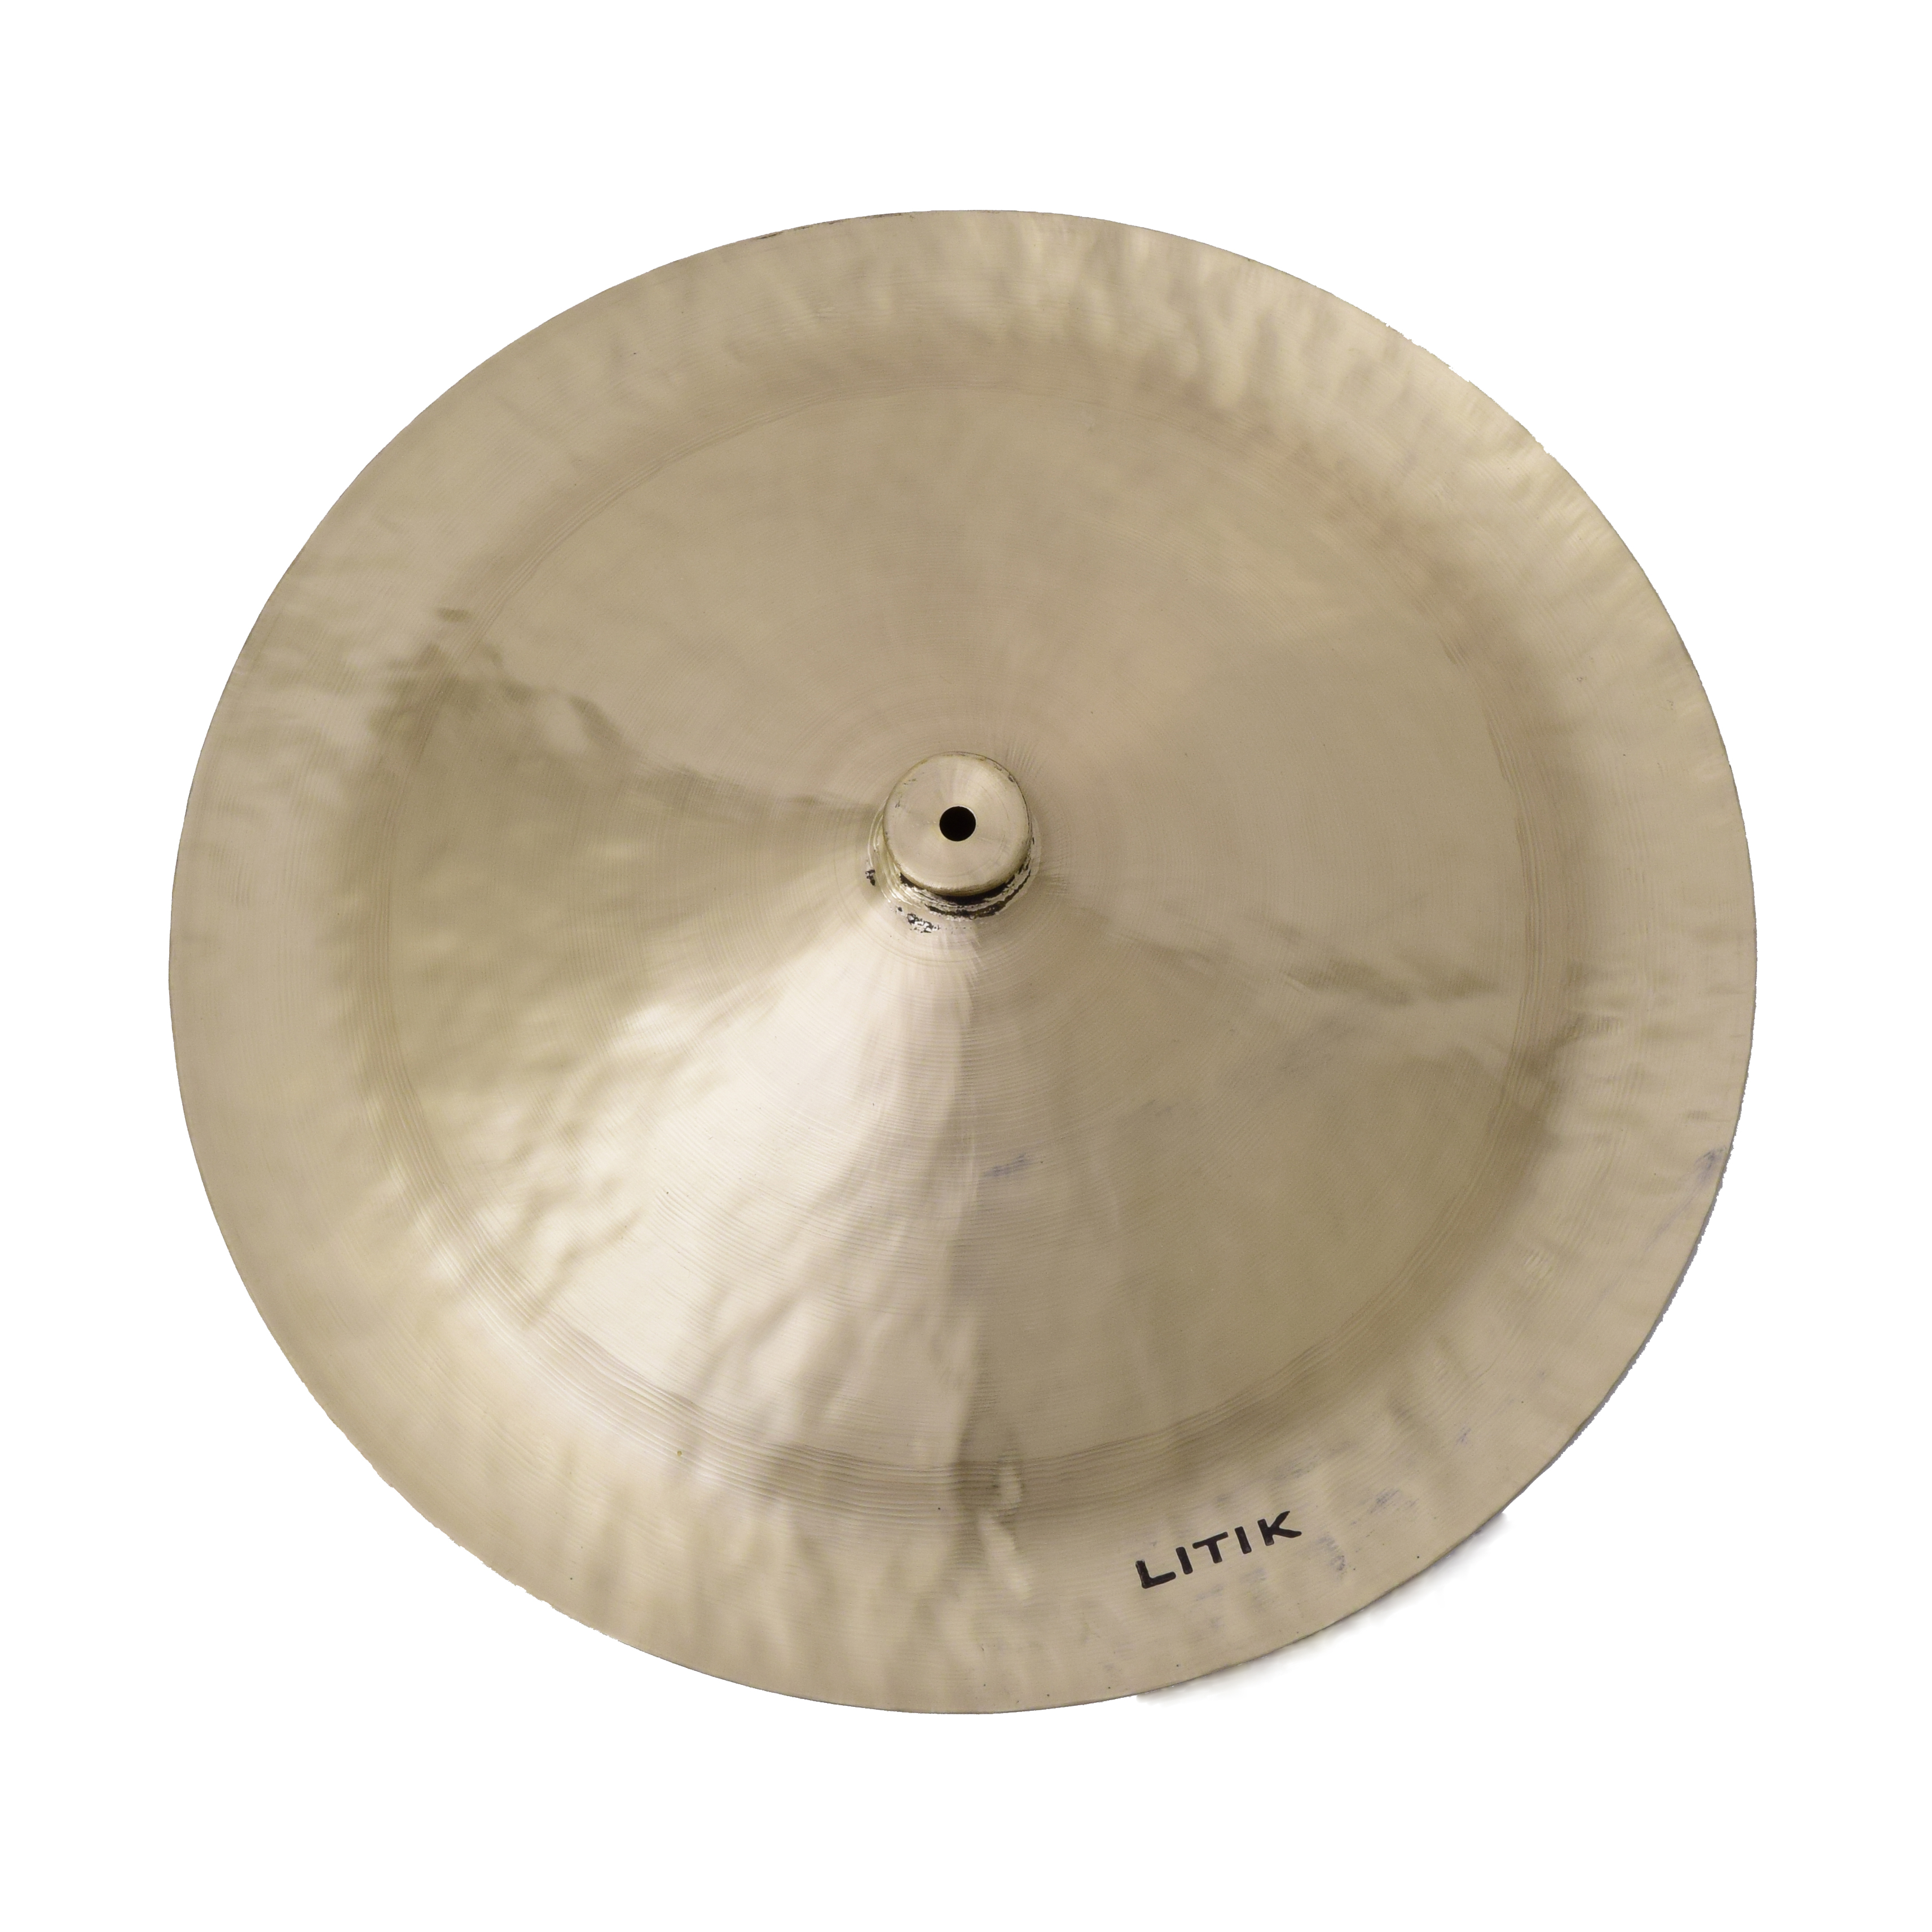 Litik Lion China Cymbal